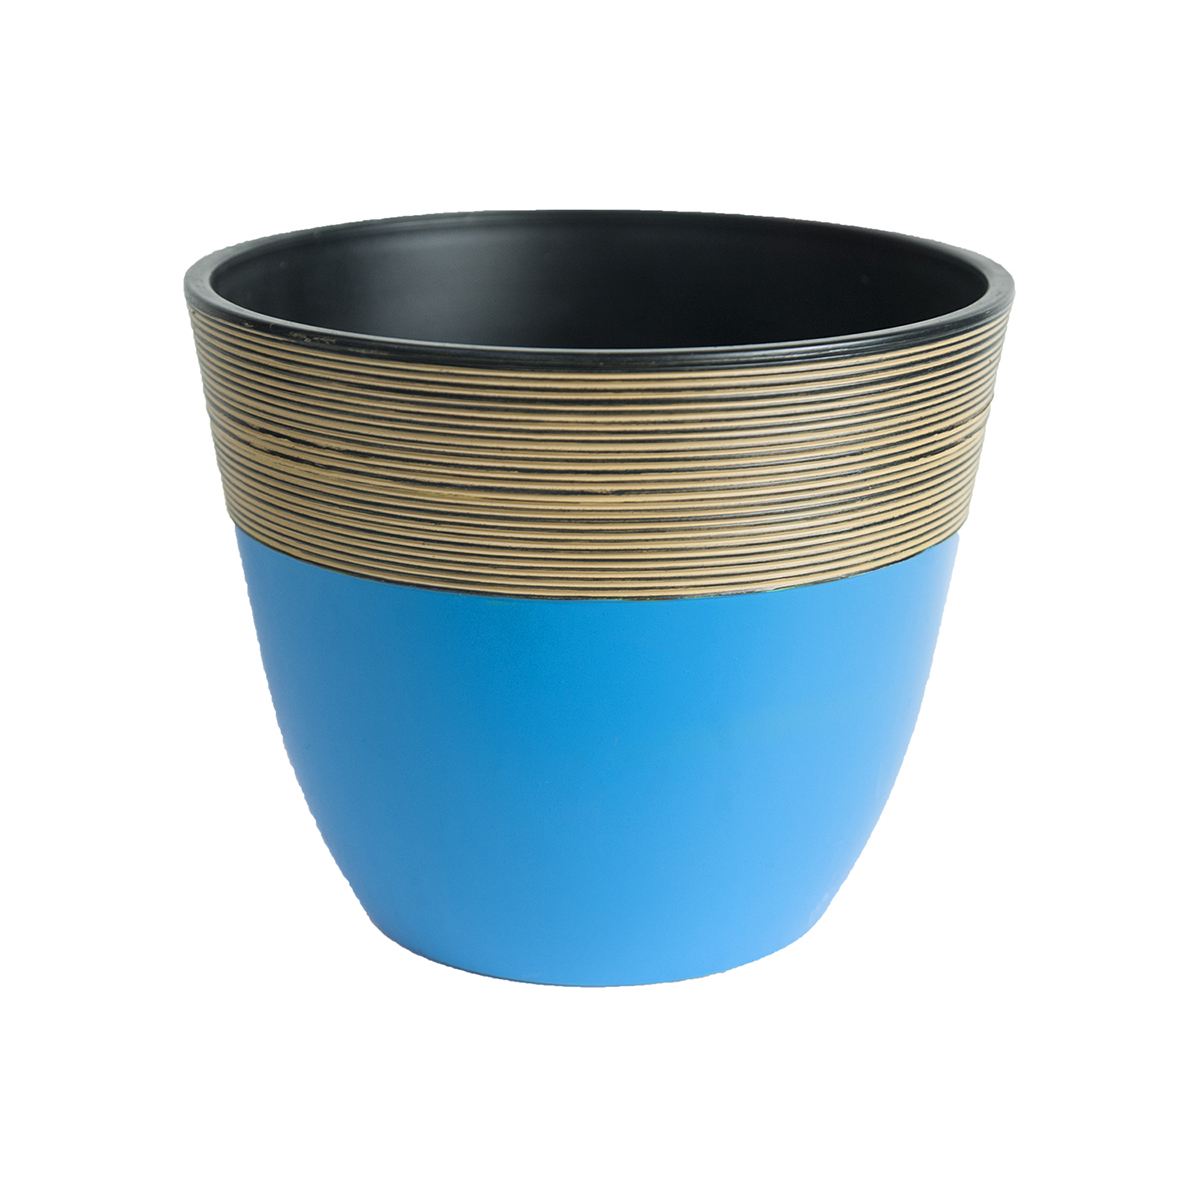 20cm Indoor Wood Grain Ceramic Effect Plastic Planter